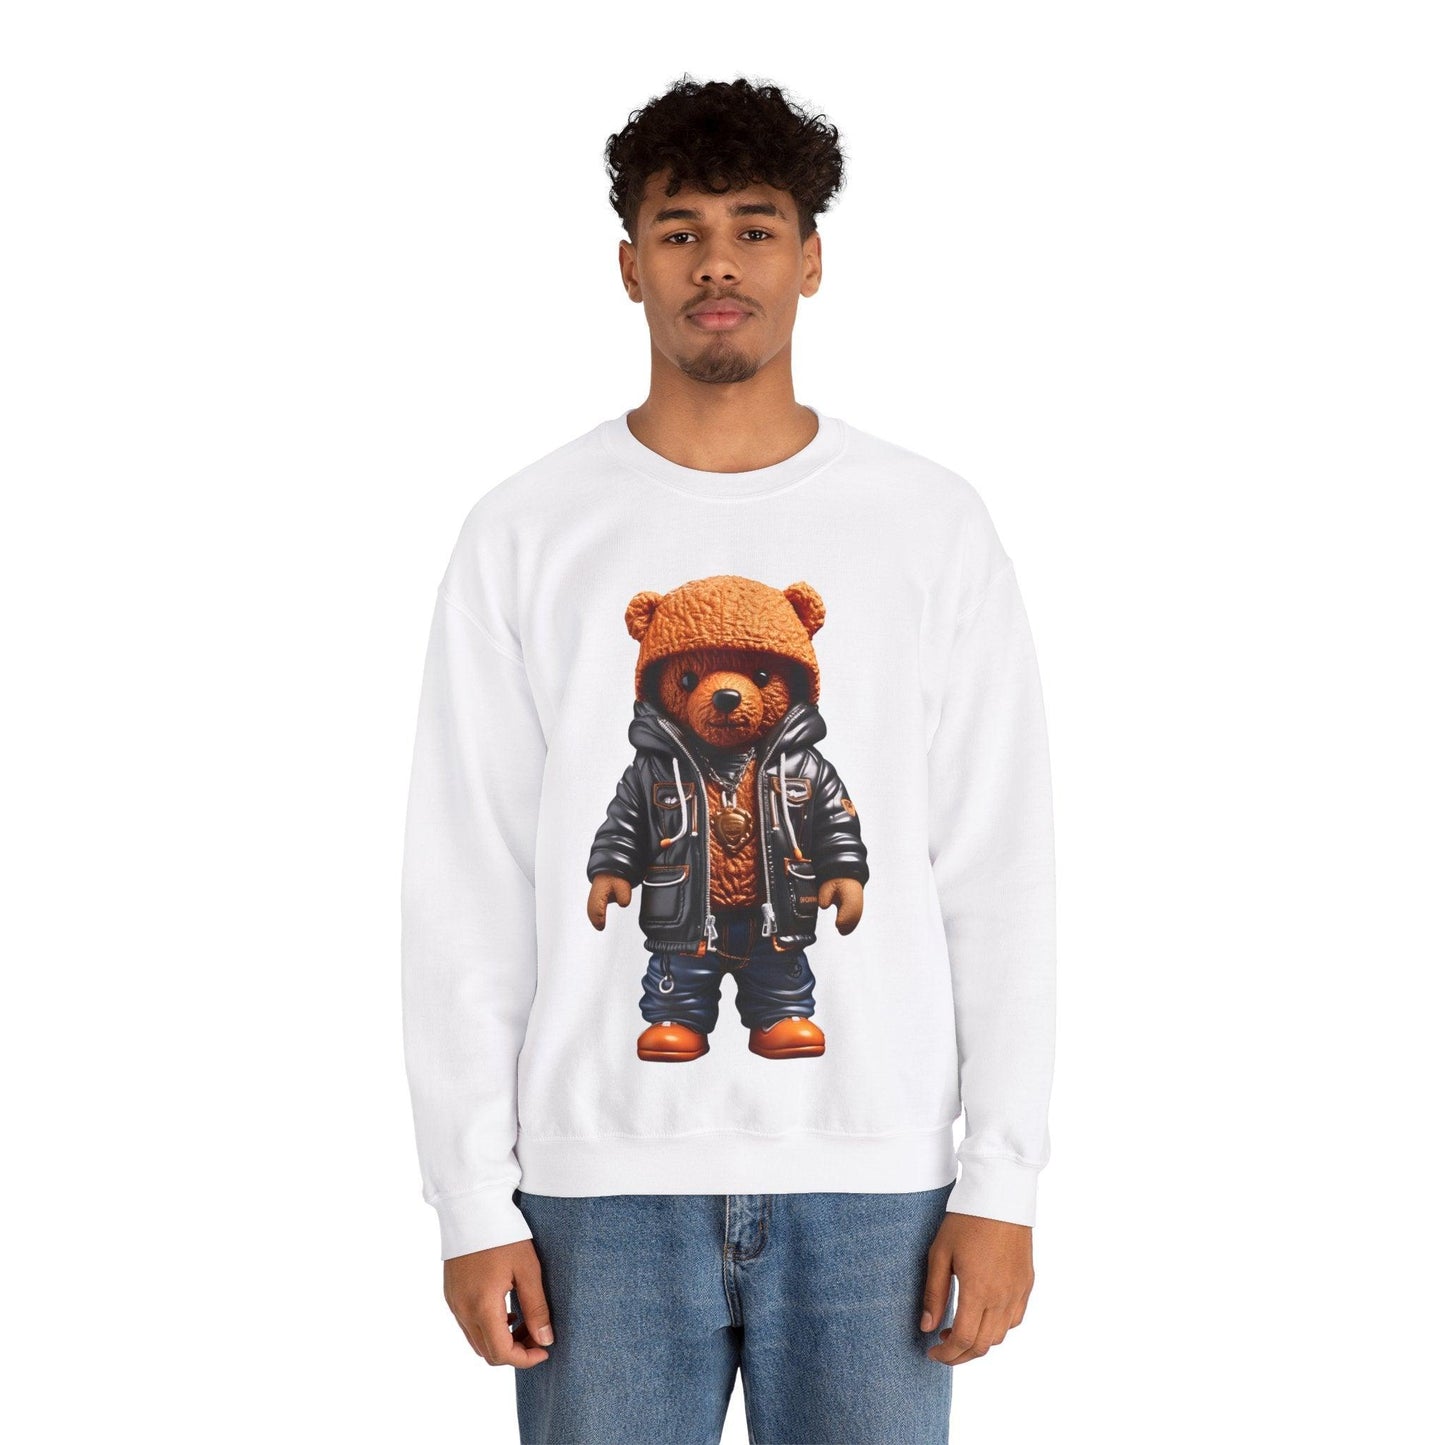 Hiphop lover gift sweatshirt